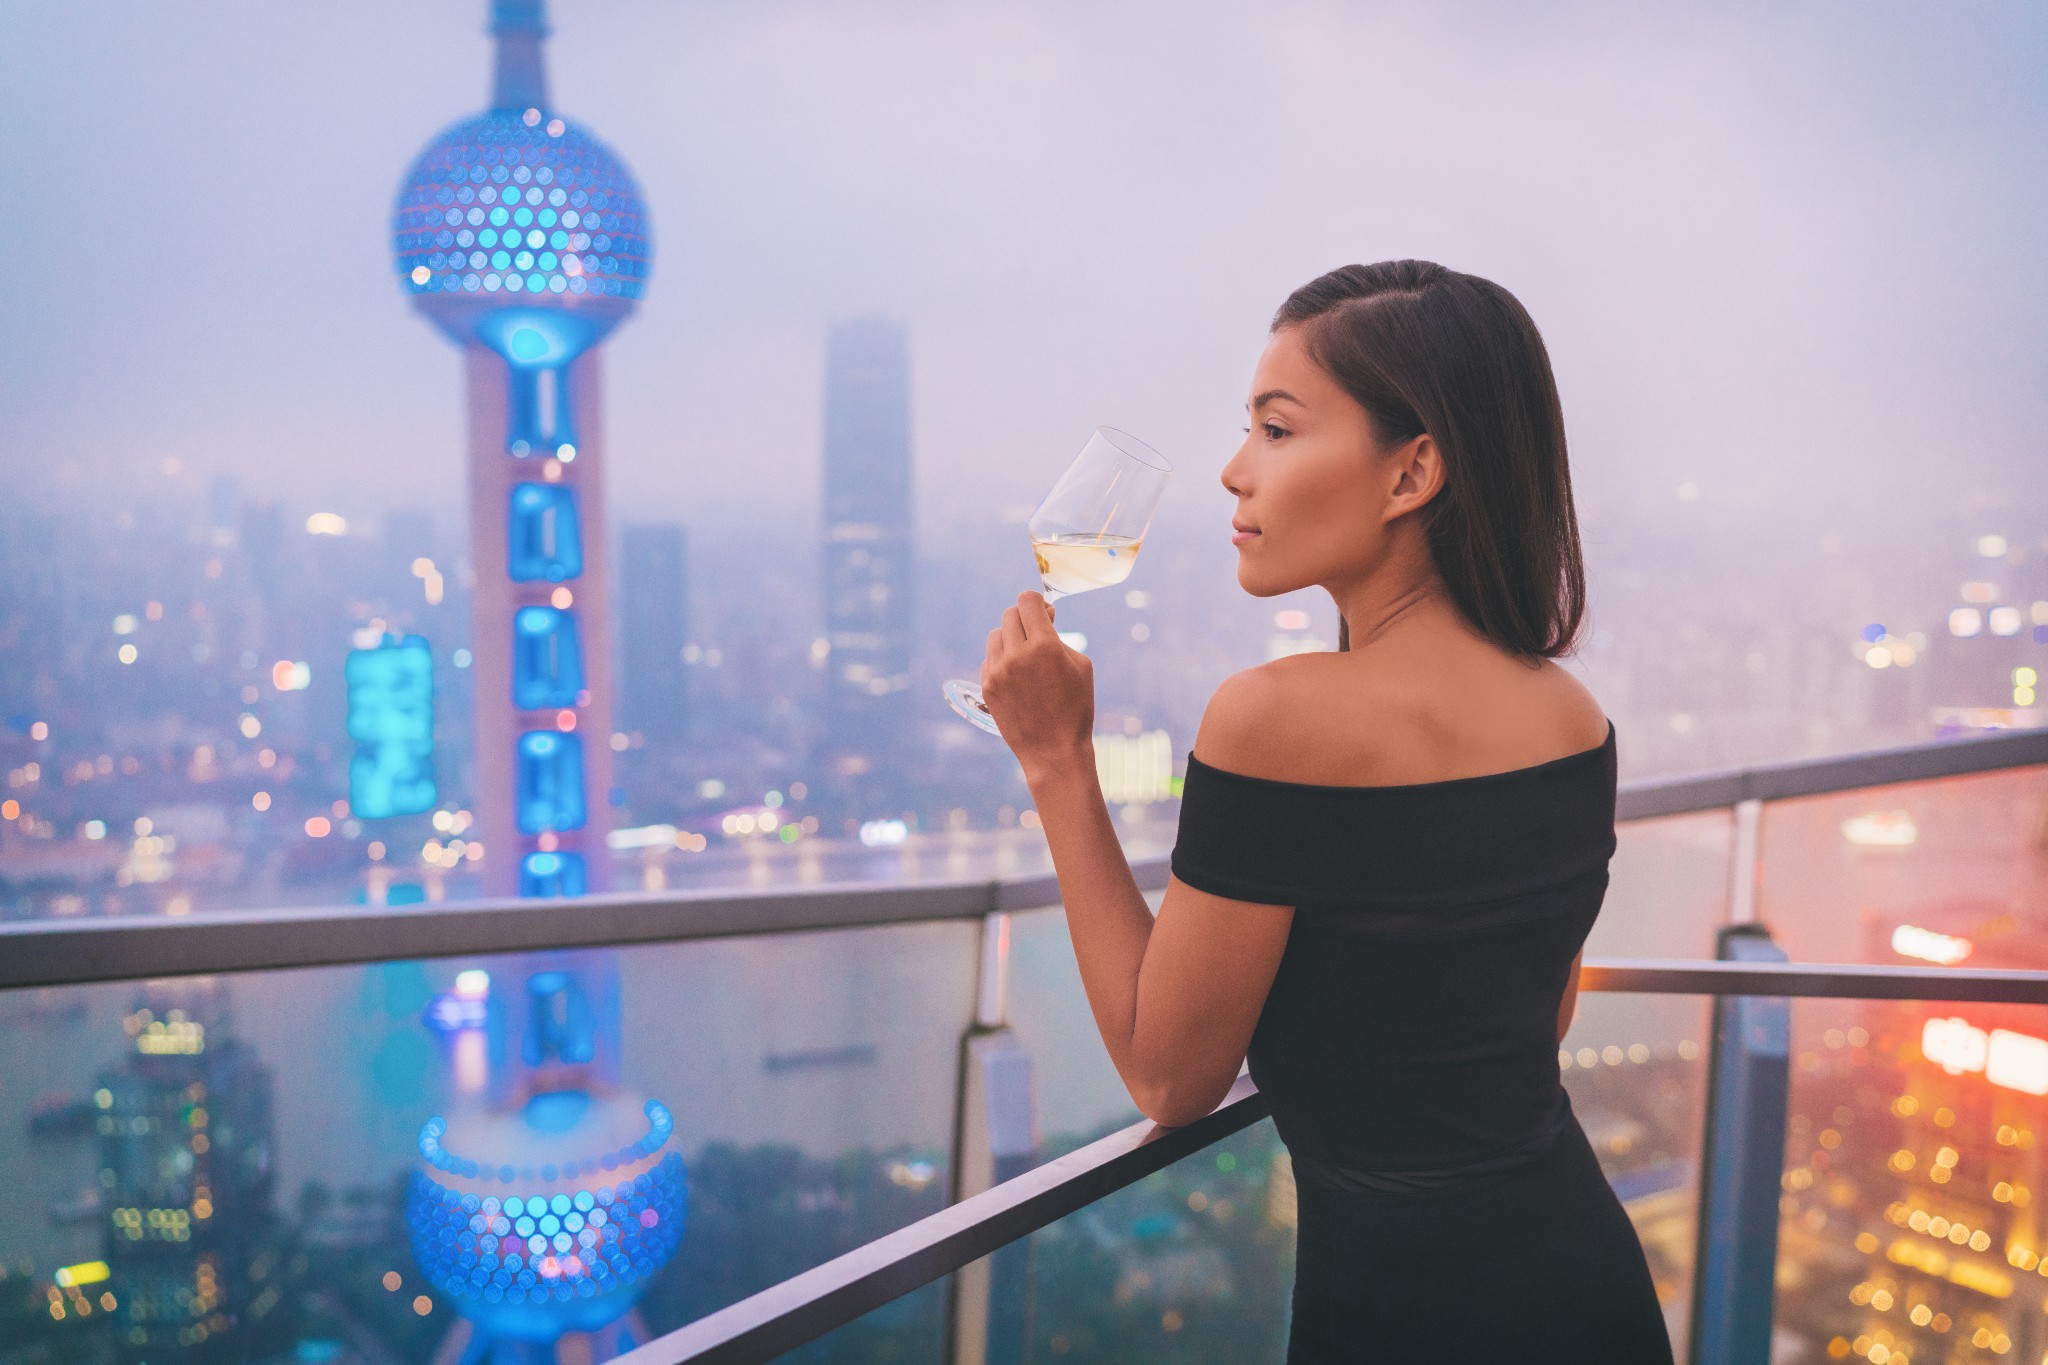 แนวโน้มอันดับต้น ๆ ของตลาดไวน์ในจีน ปี 2021